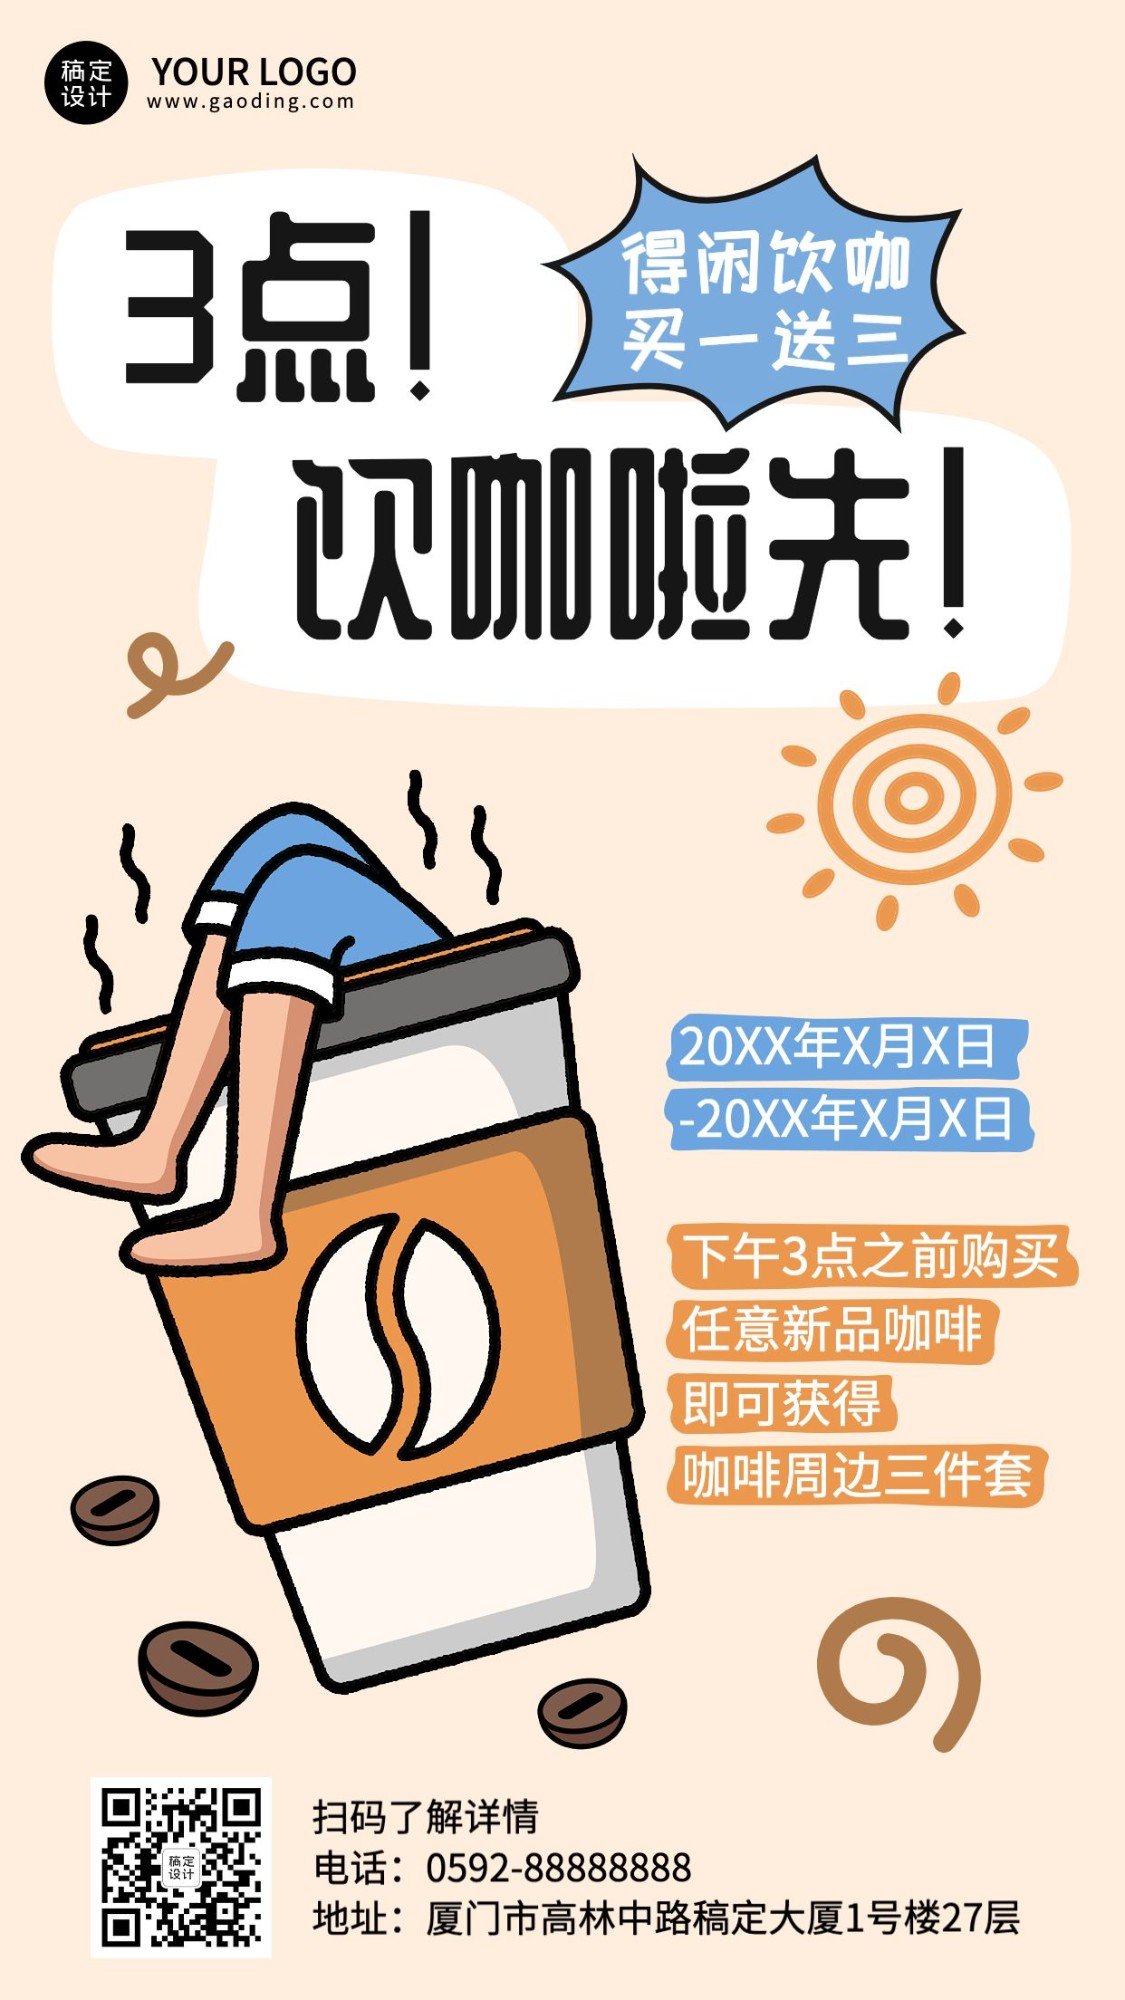 餐饮常规奶茶饮品咖啡品牌宣传手机海报